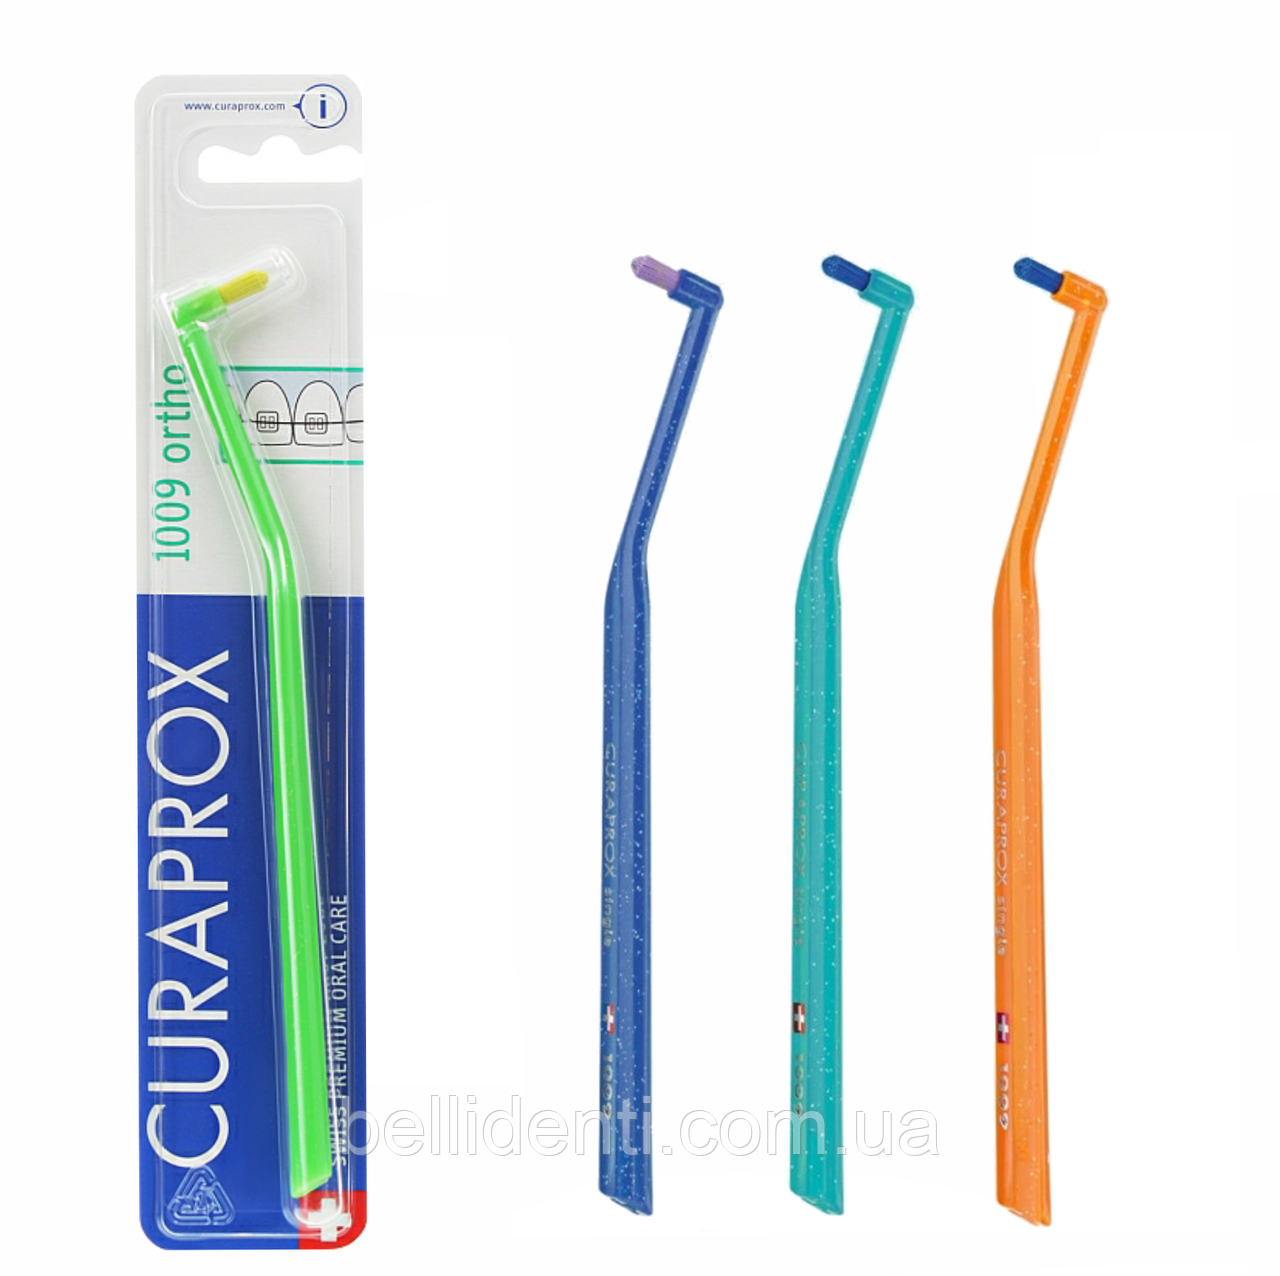 Монопучкова зубна щітка Curaprox Single CS 1009 для брекетів, 1 шт